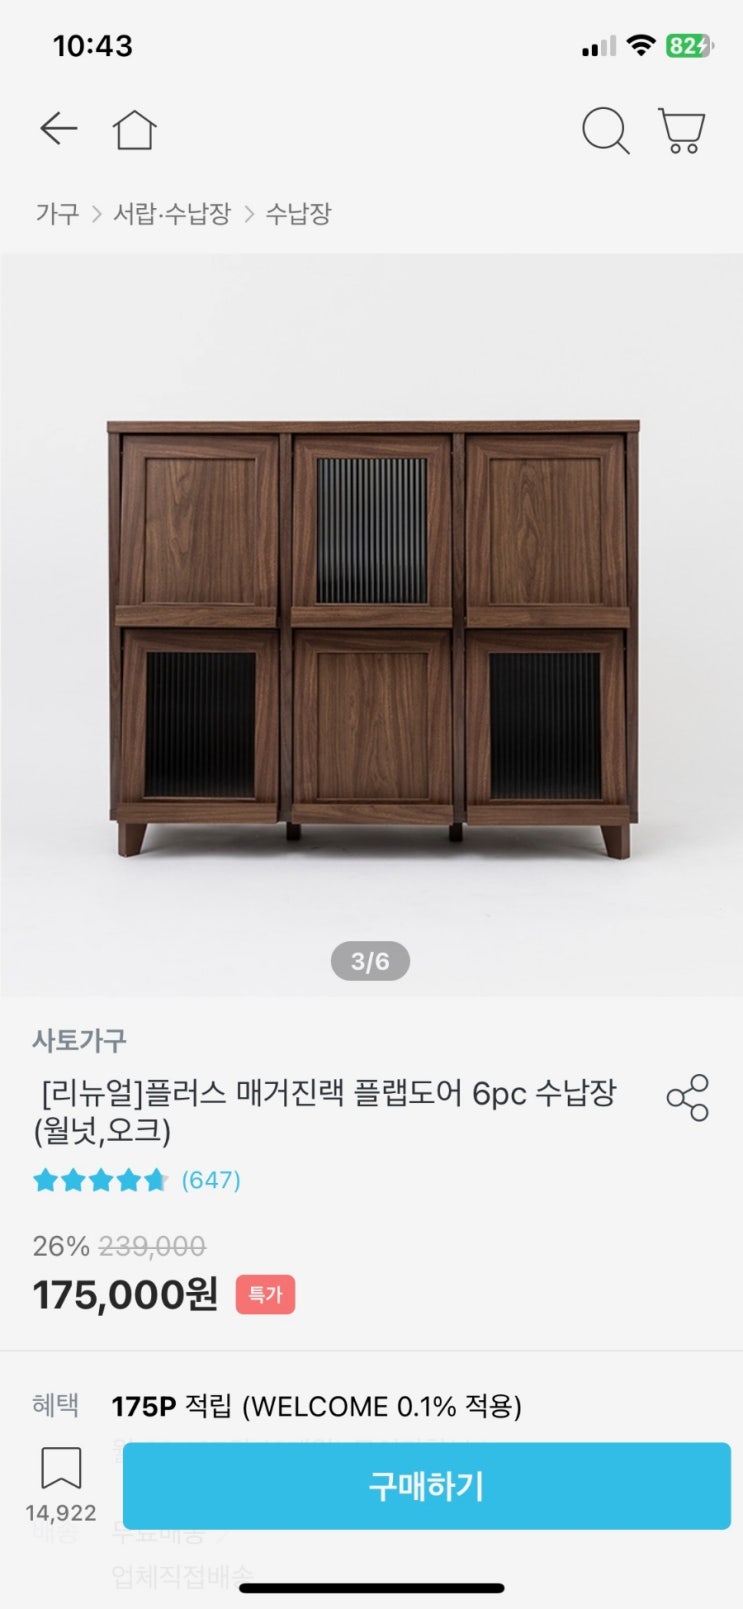 [서랍장 조립] 신천동 한신코아 오피스텔 (5만원)